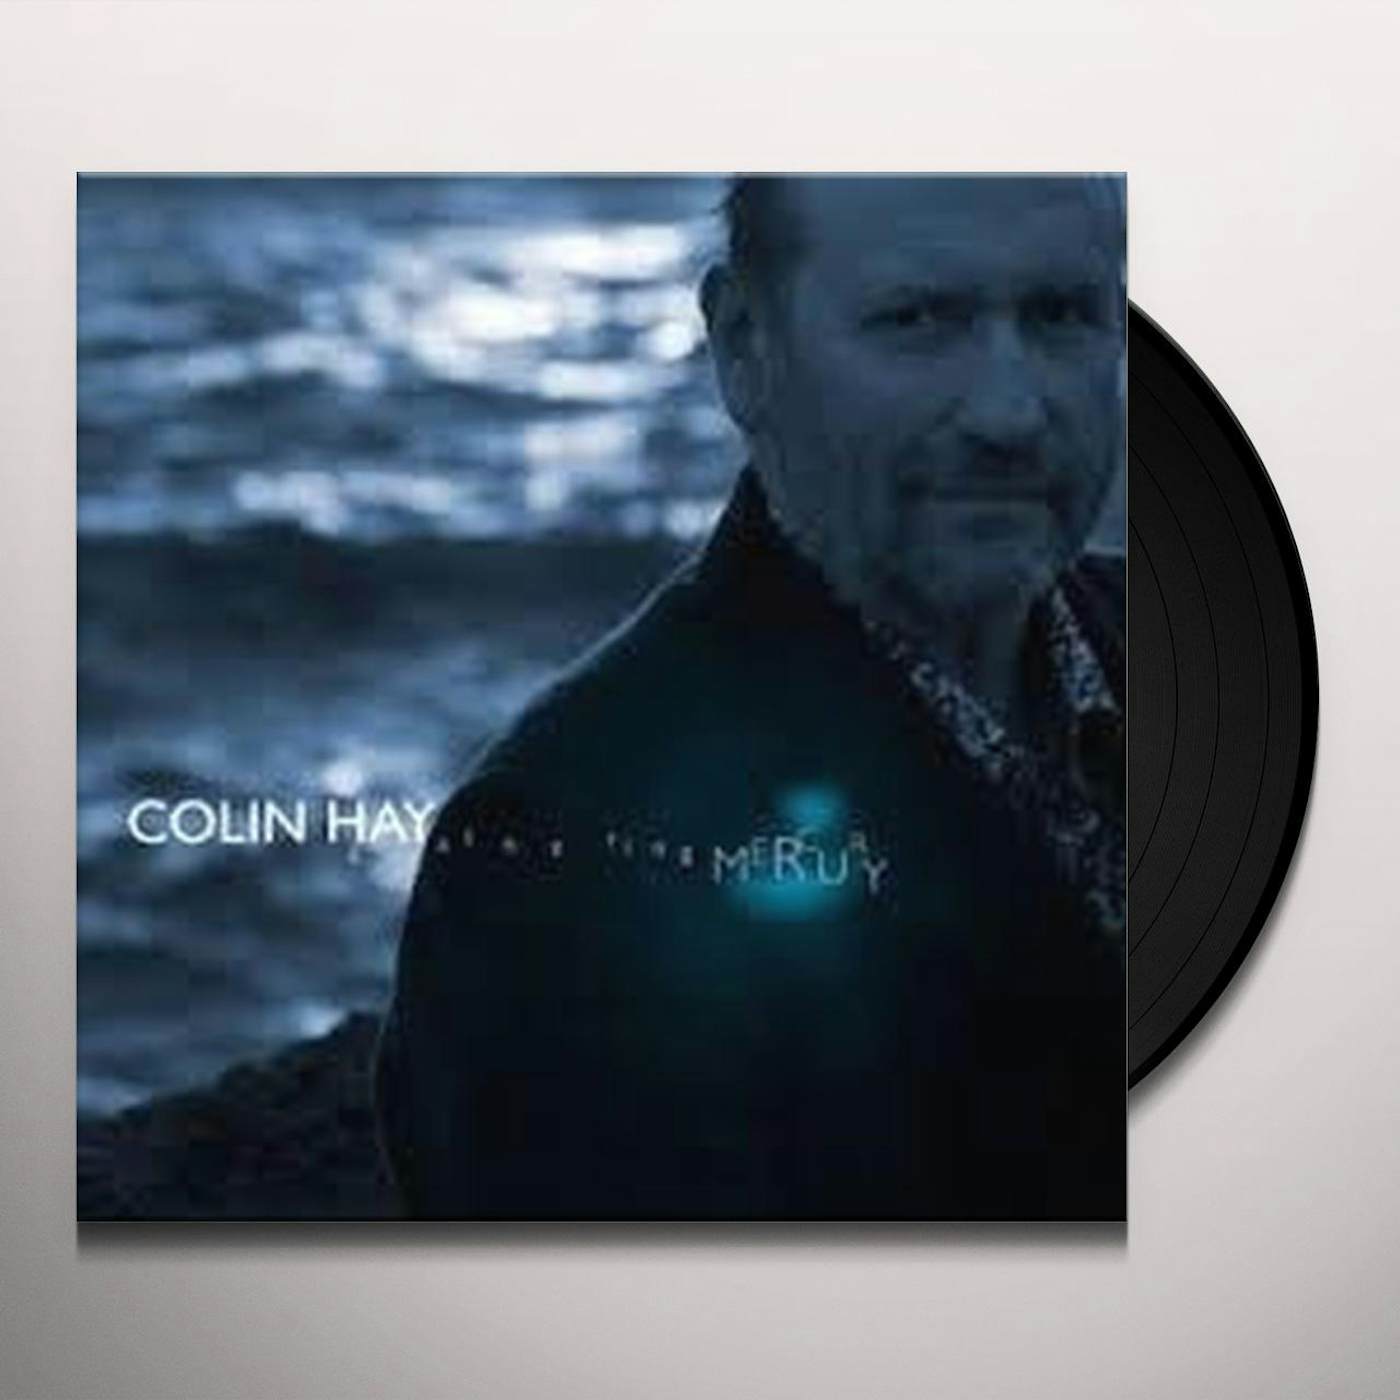 Colin Hay Gathering Mercury Vinyl Record